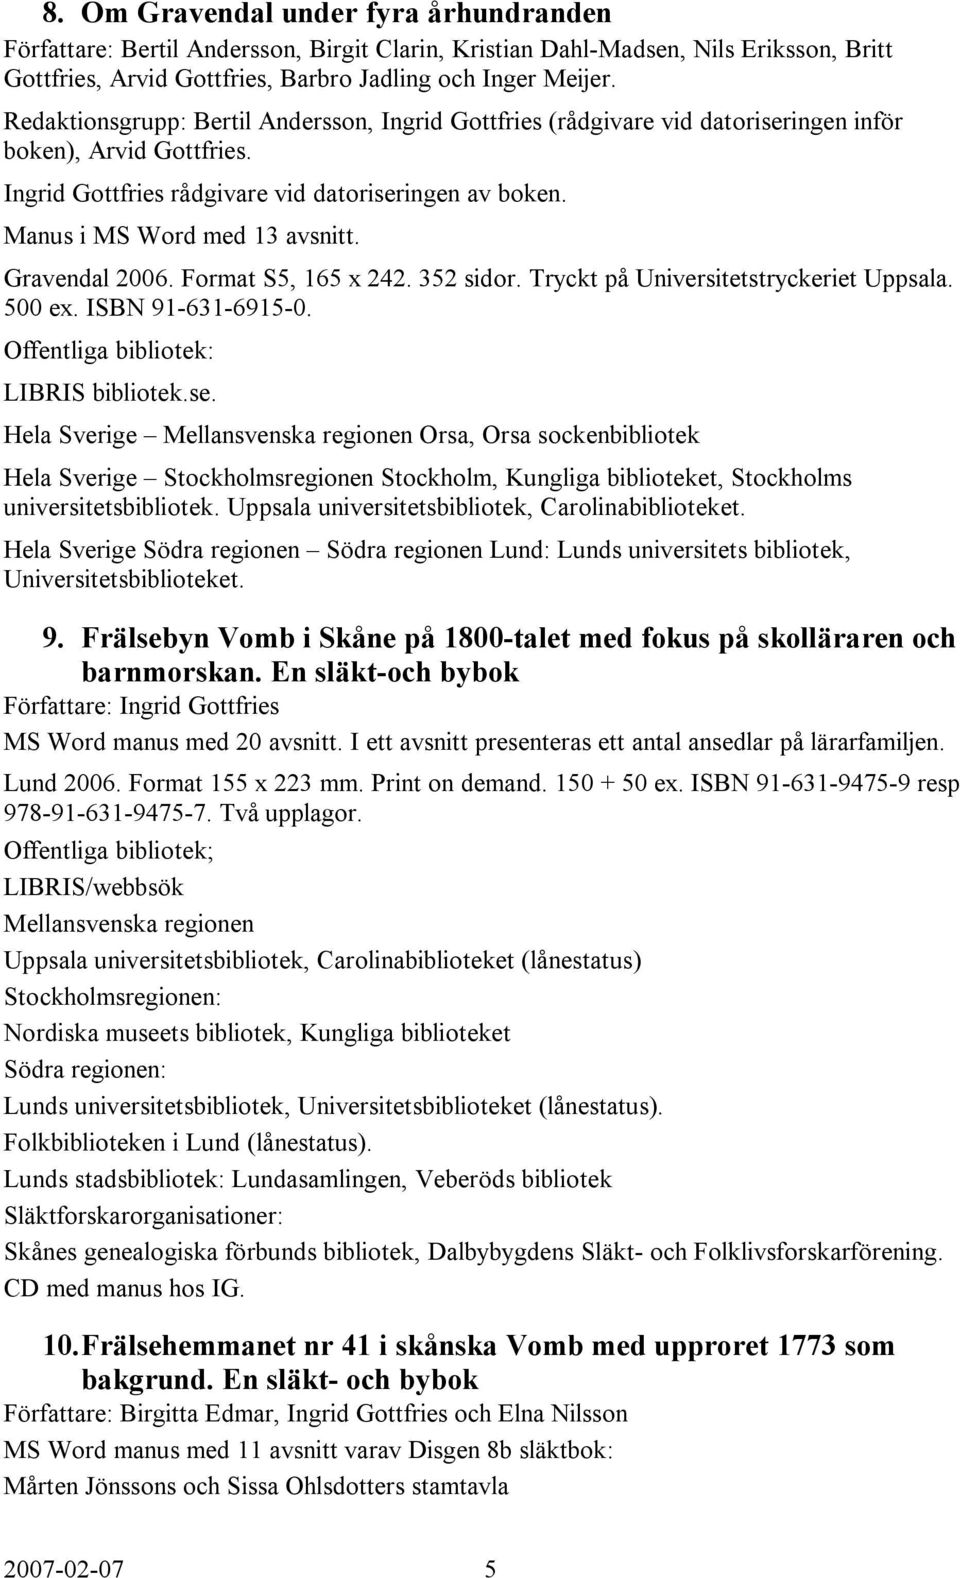 Gravendal 2006. Format S5, 165 x 242. 352 sidor. Tryckt på Universitetstryckeriet Uppsala. 500 ex. ISBN 91-631-6915-0. LIBRIS bibliotek.se.